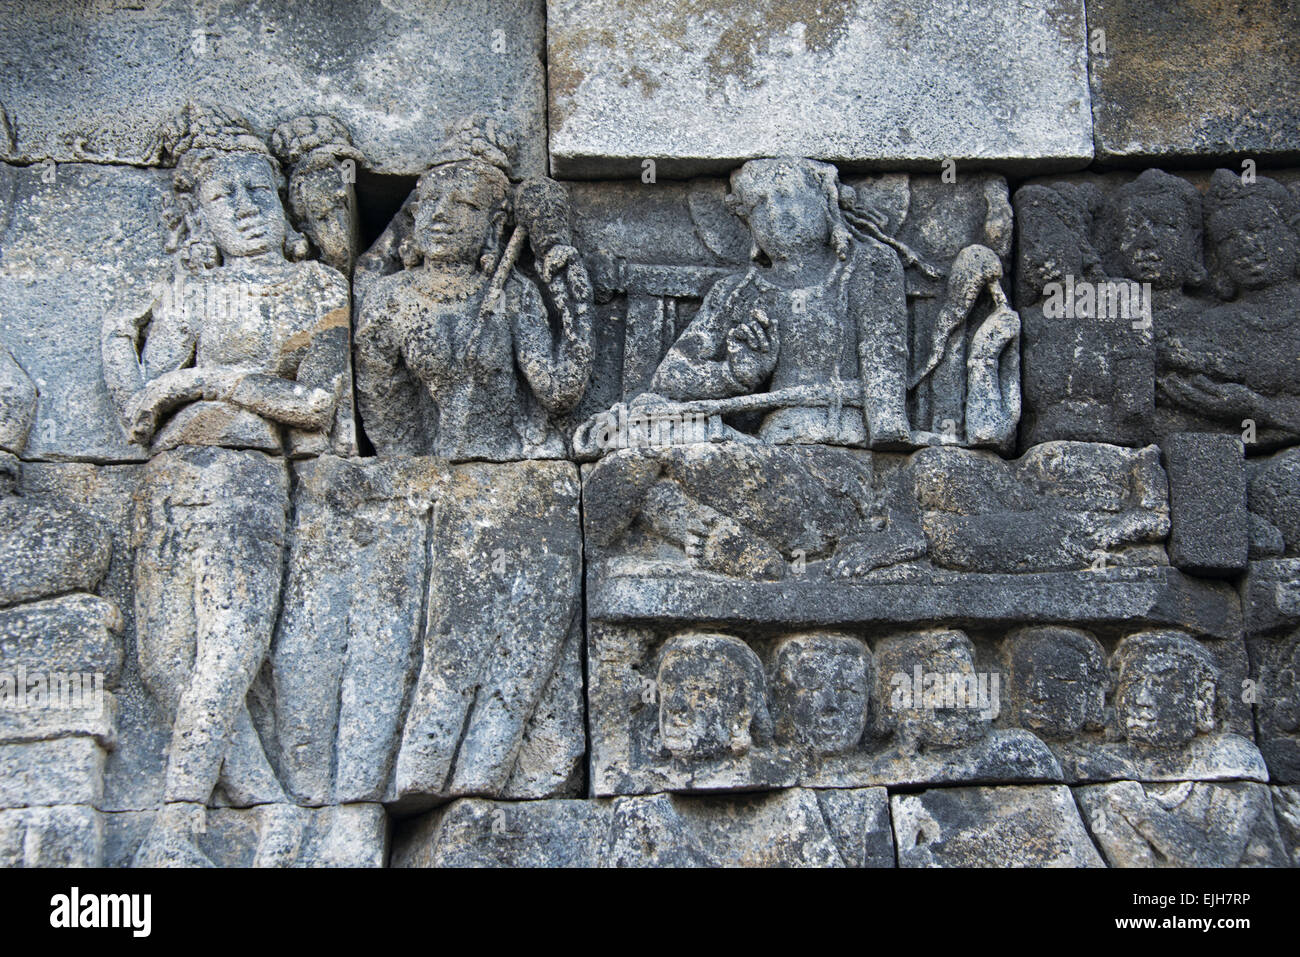 La sculpture sur pierre à Borobudur, UNESCO World Heritage site, Magelang,Central Java, Indonésie Banque D'Images